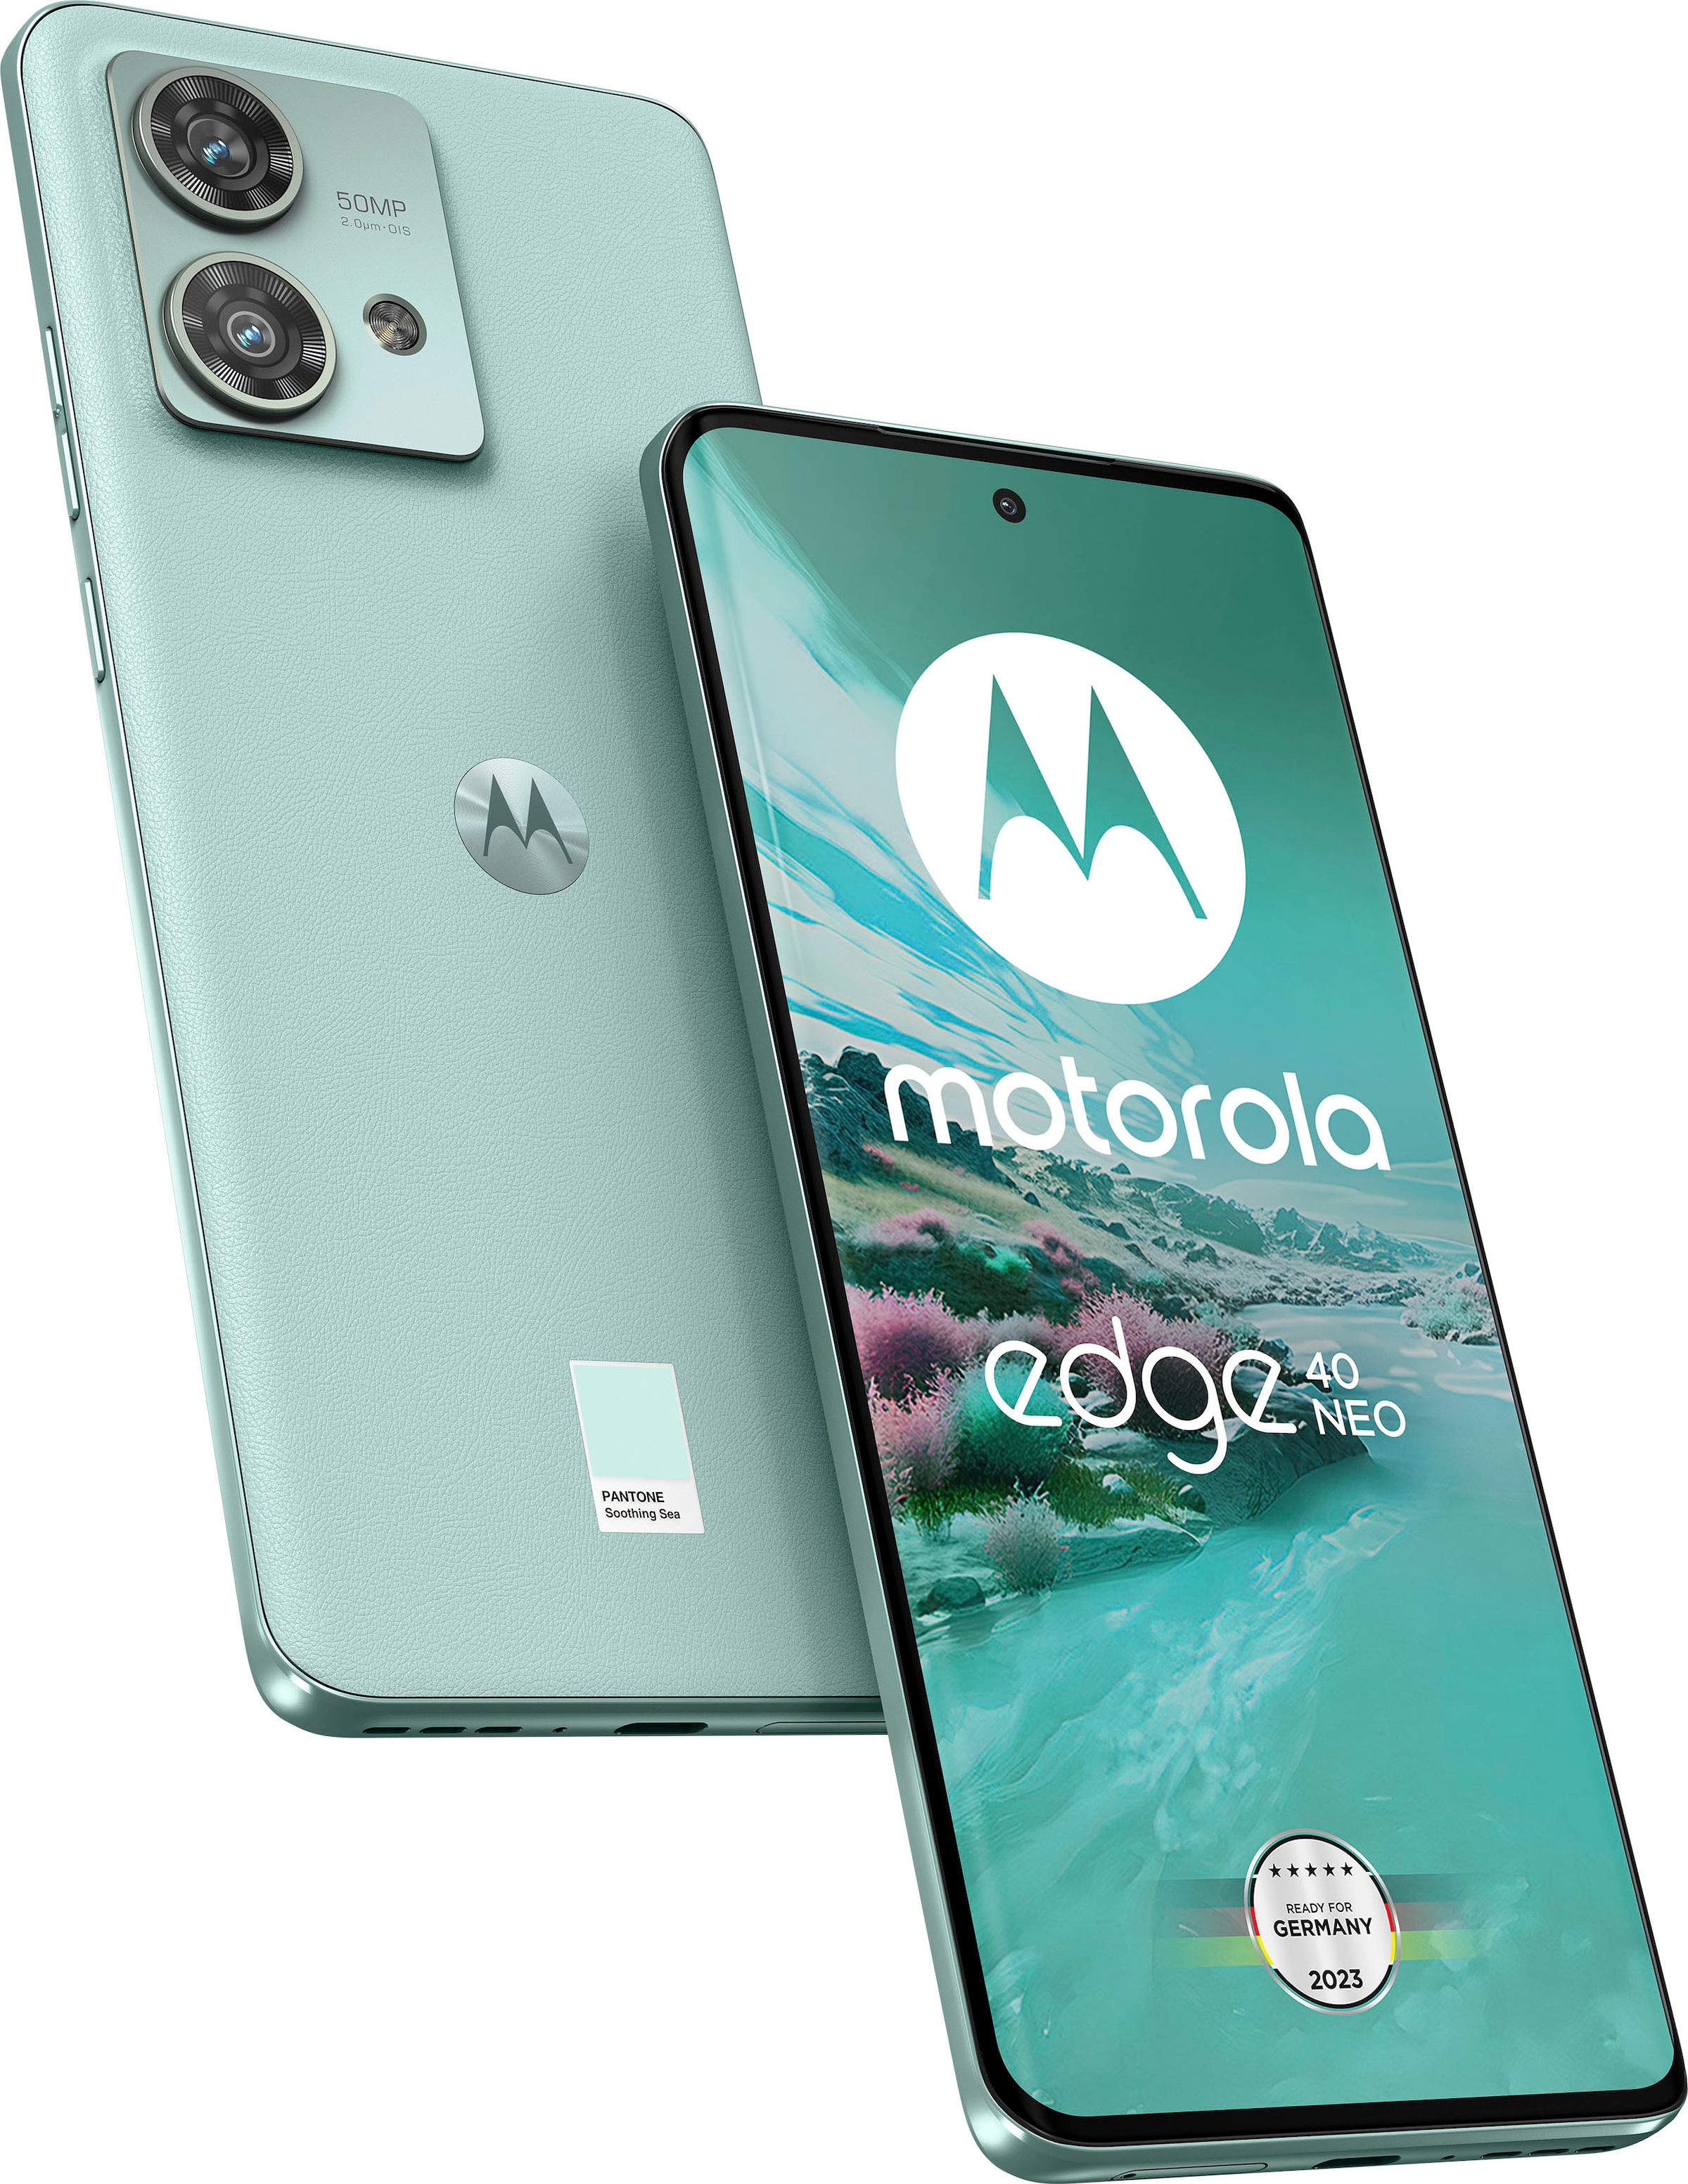 Motorola Smartphone »edge 40 neo, GB«, kaufen Zoll, Speicherplatz, GB Beauty, Rechnung Black Kamera 50 cm/6,55 256 auf 16,64 256 MP